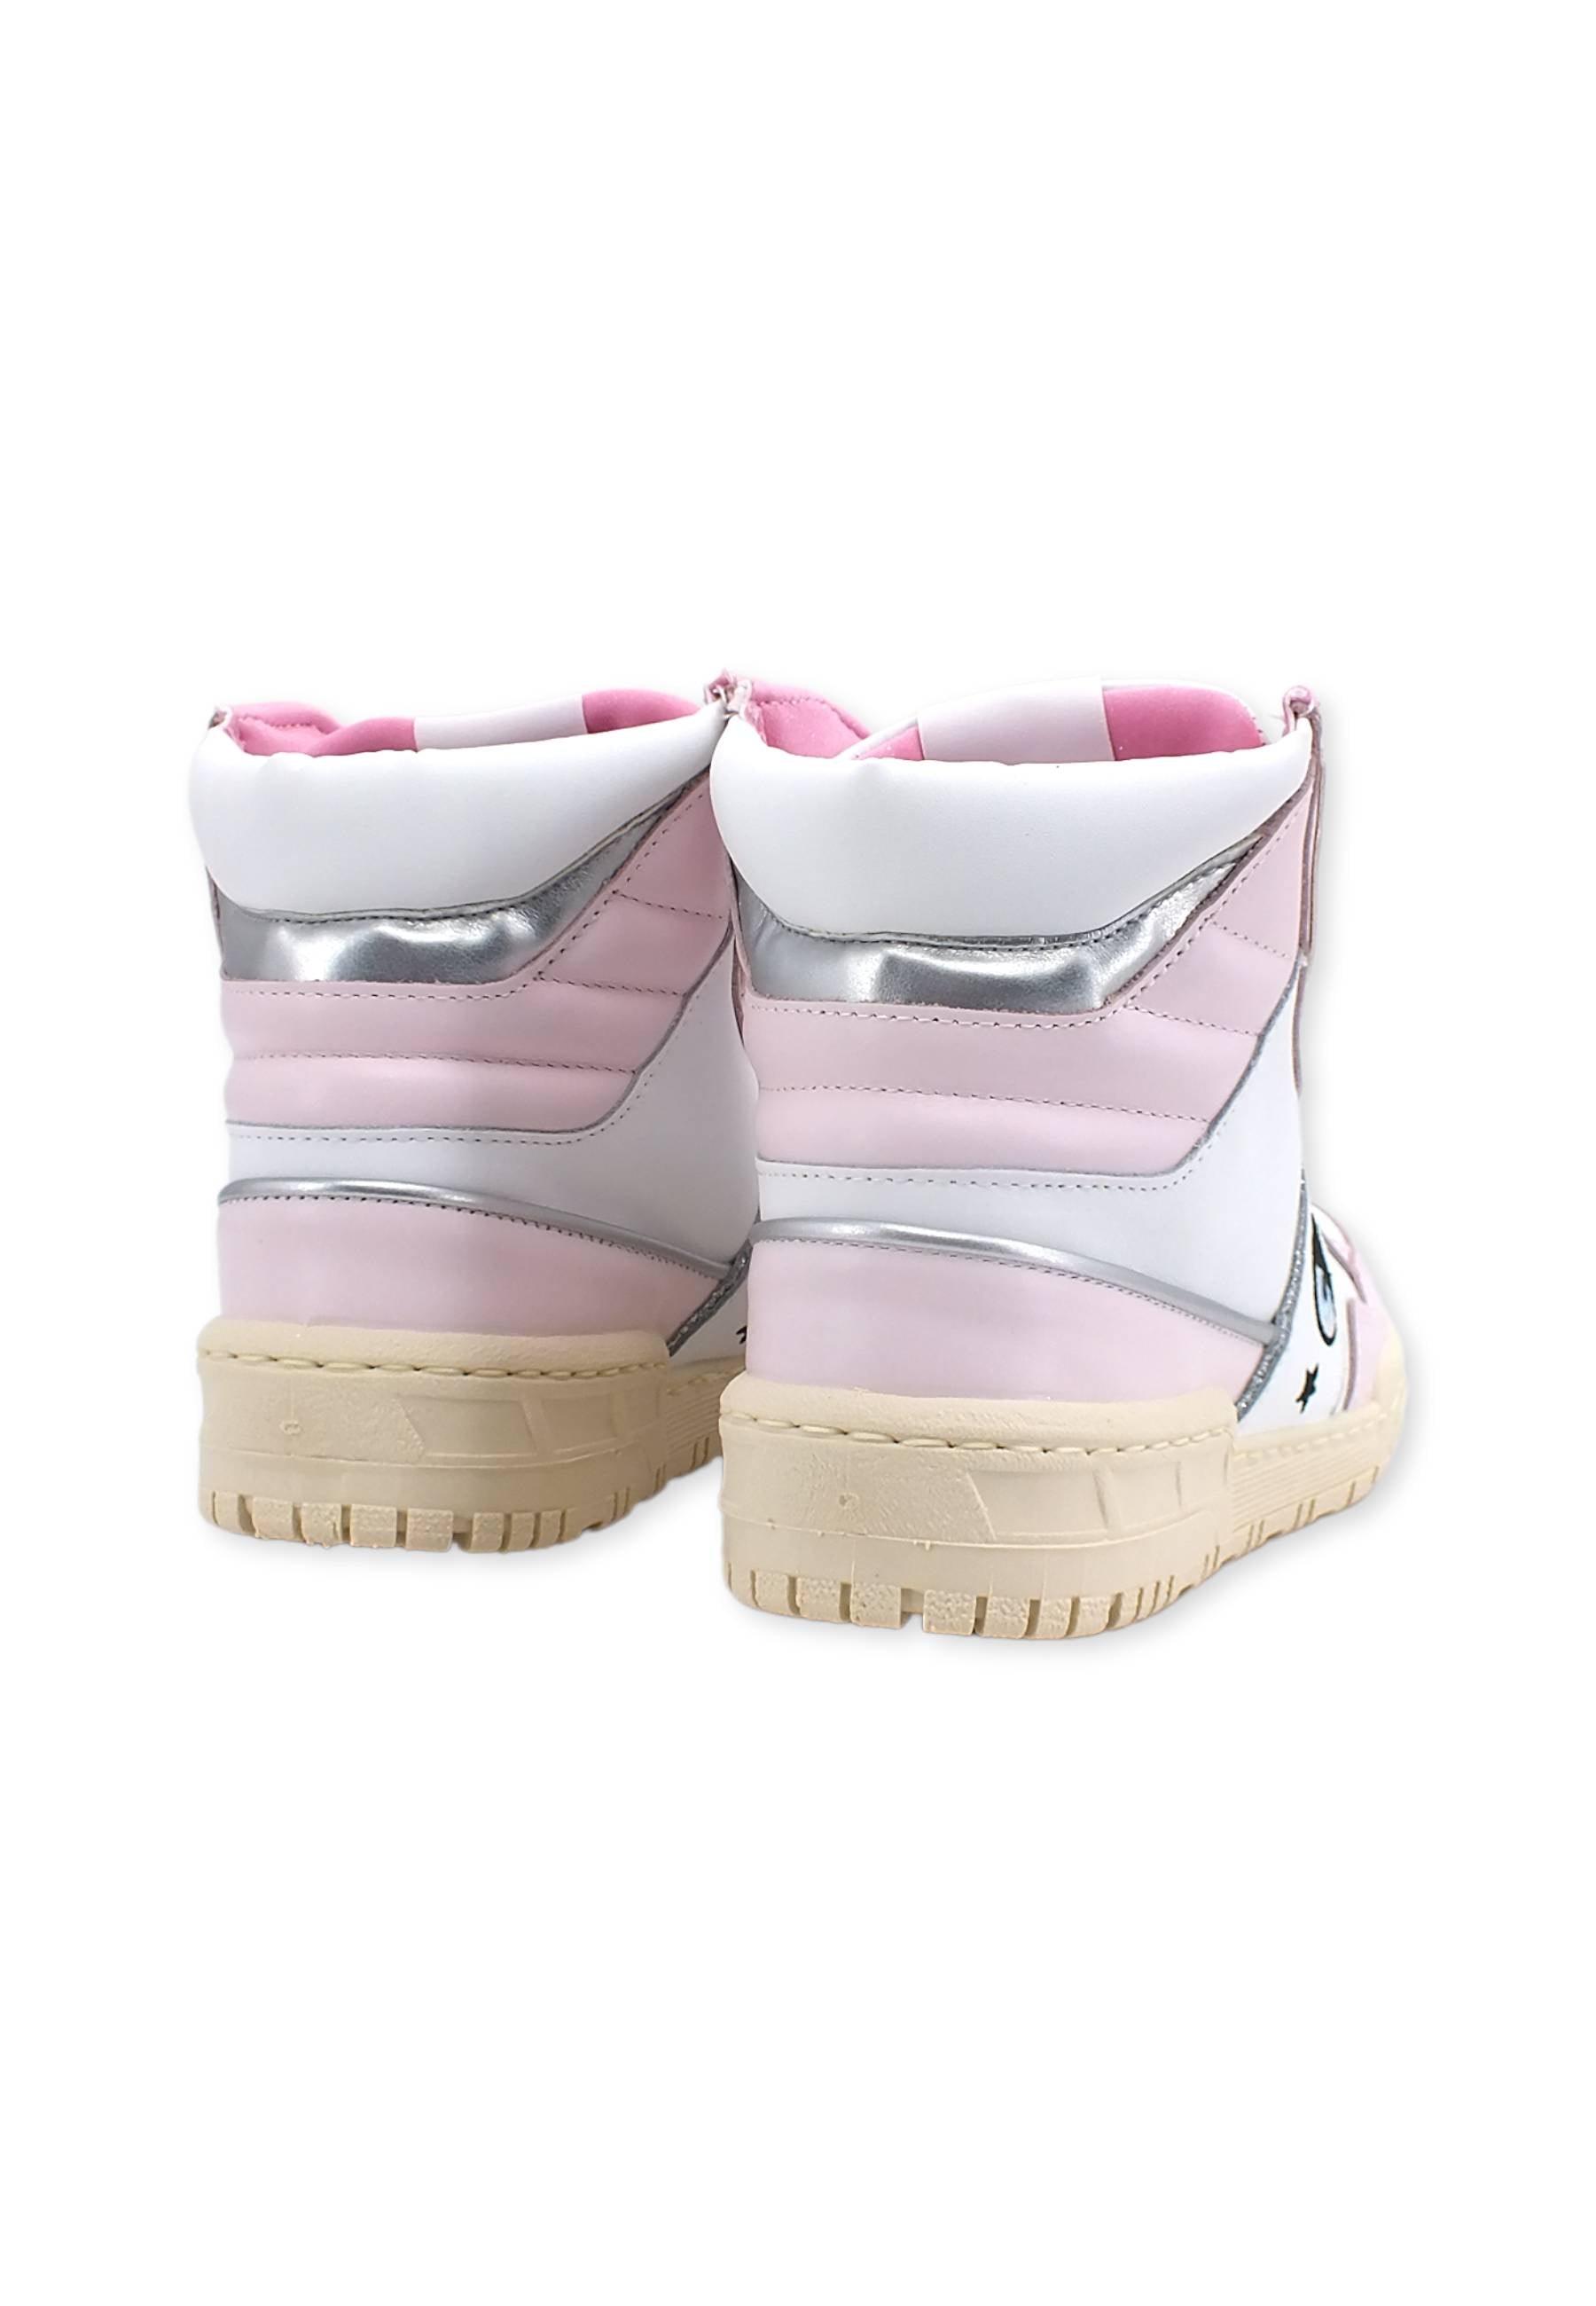 CHIARA FERRAGNI Sneaker High Donna White Light Pink CF3006-171 - Sandrini Calzature e Abbigliamento